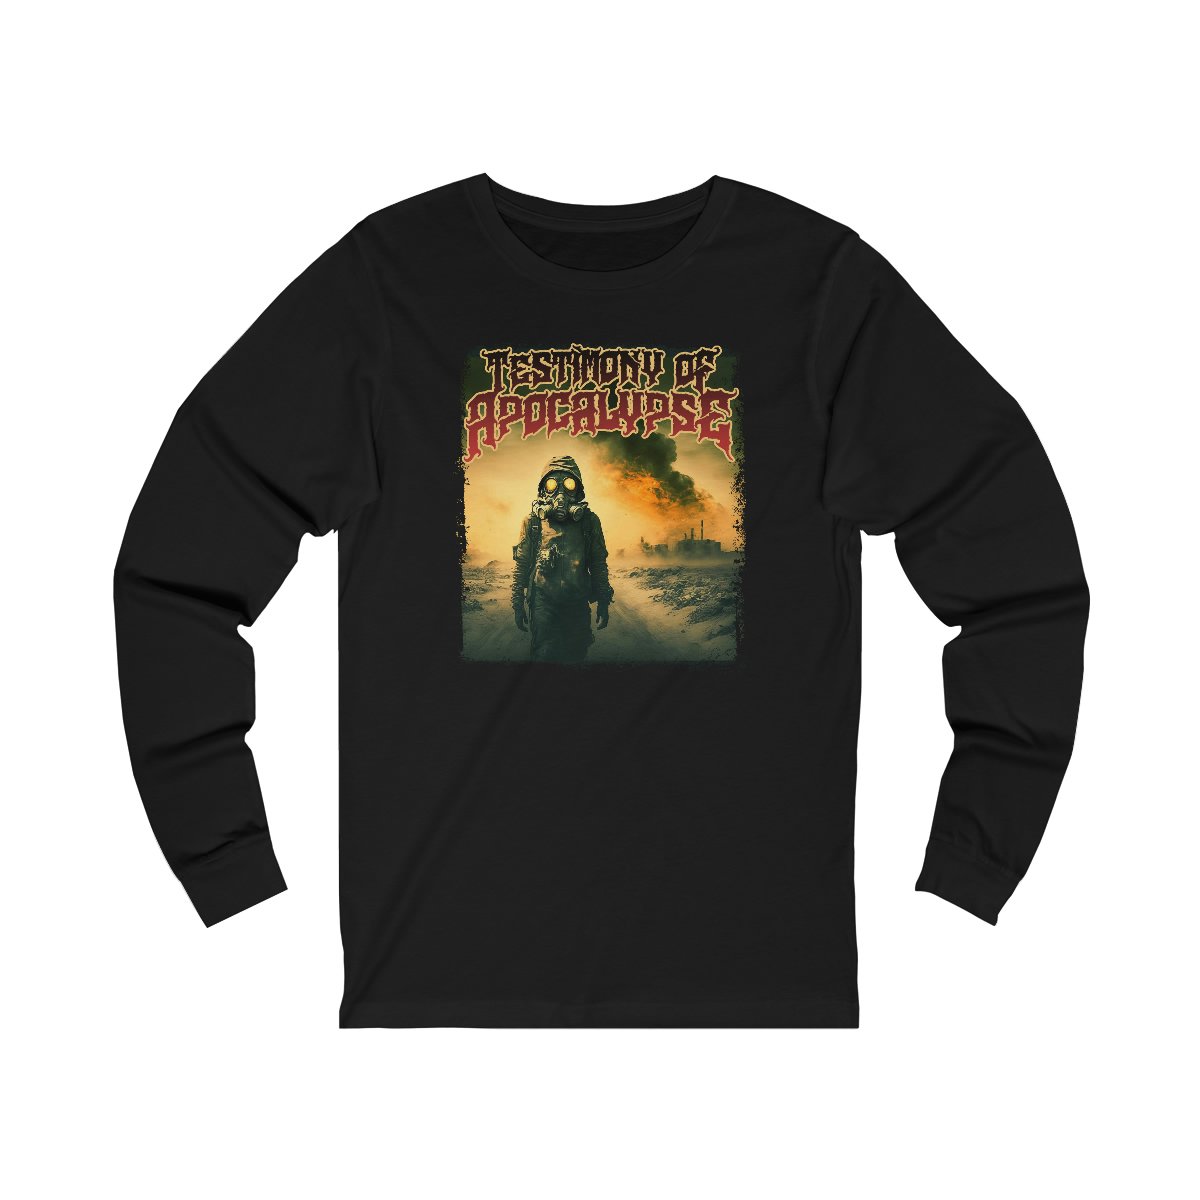 Testimony of Apocalypse – Doomsday Long Sleeve Tshirt 3501